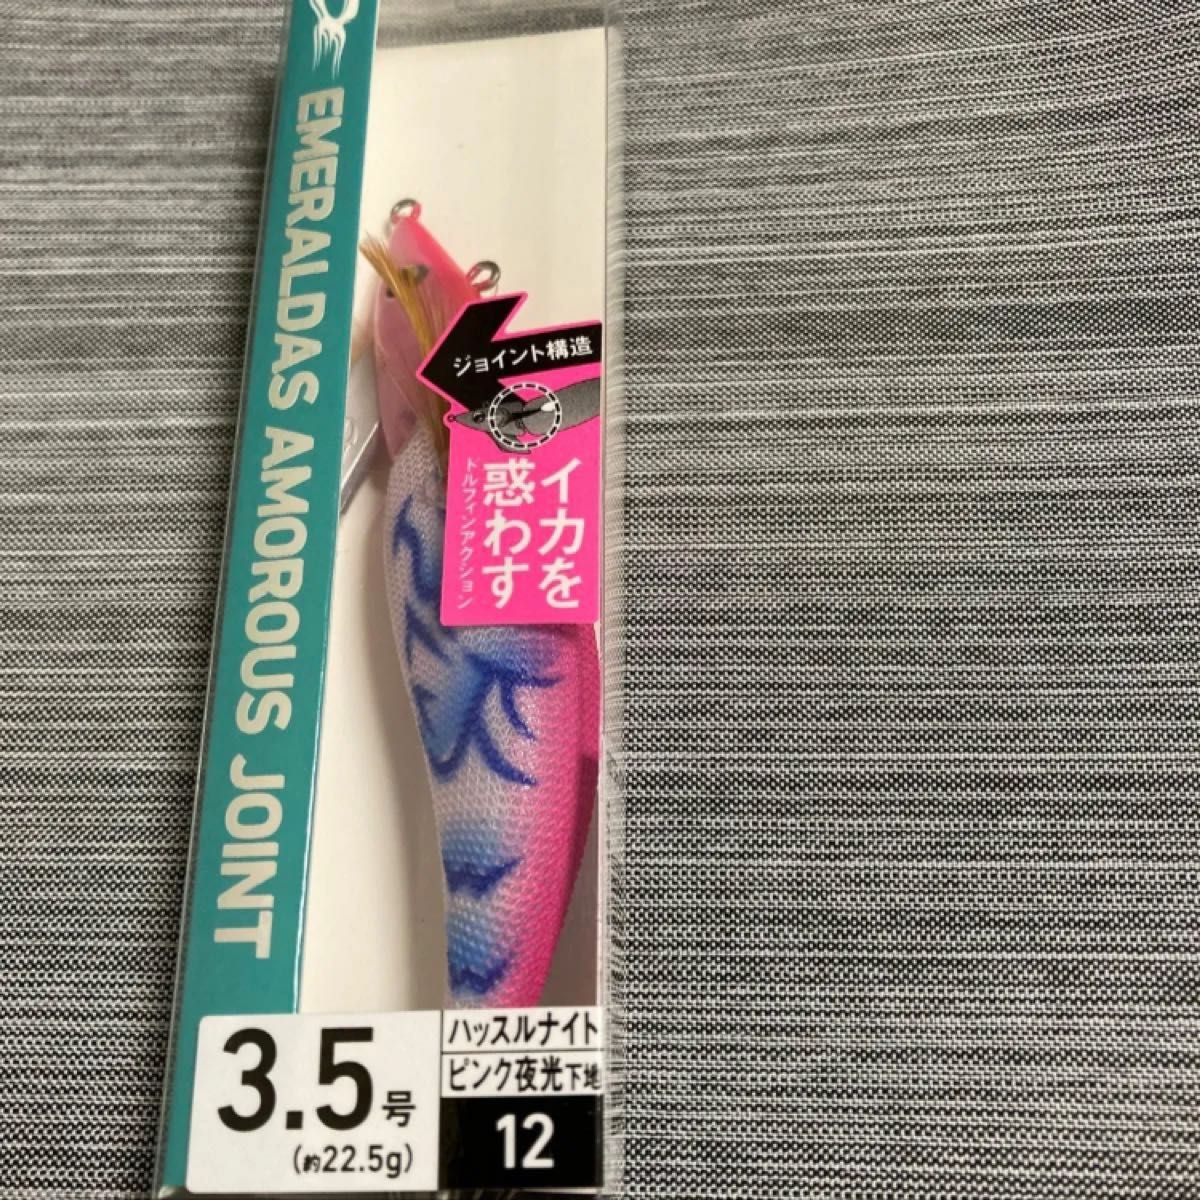 【新品未使用】エメラルダス アモラスジョイント 3.5号 ピンク夜光-ハッスルナイト